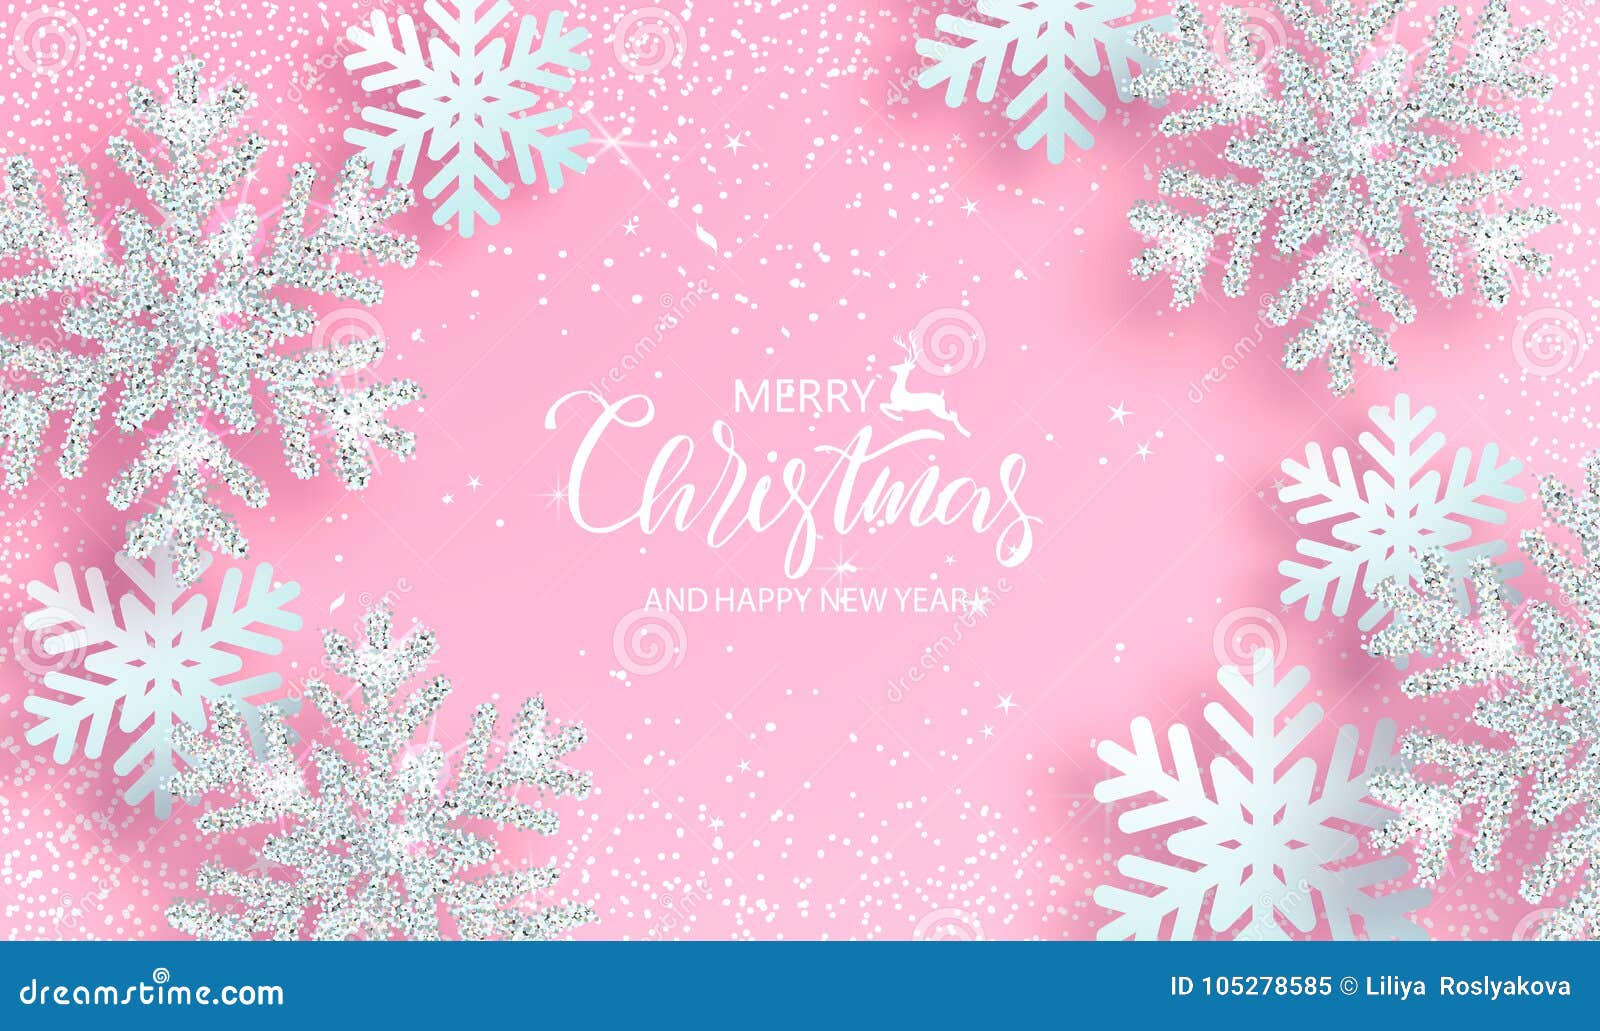 Hãy cùng đón một mùa Giáng sinh ấm áp với những hình nền tuyệt đẹp màu hồng nhẹ nhàng, ngọt ngào. Chắc chắn bạn sẽ yêu thích không gian lộng lẫy, tươi vui mà hình nền mang lại cho màn hình của bạn. Cùng thưởng thức những hình nền Giáng sinh đầy màu sắc và tràn đầy niềm vui, hân hoan tại nhà nhé!